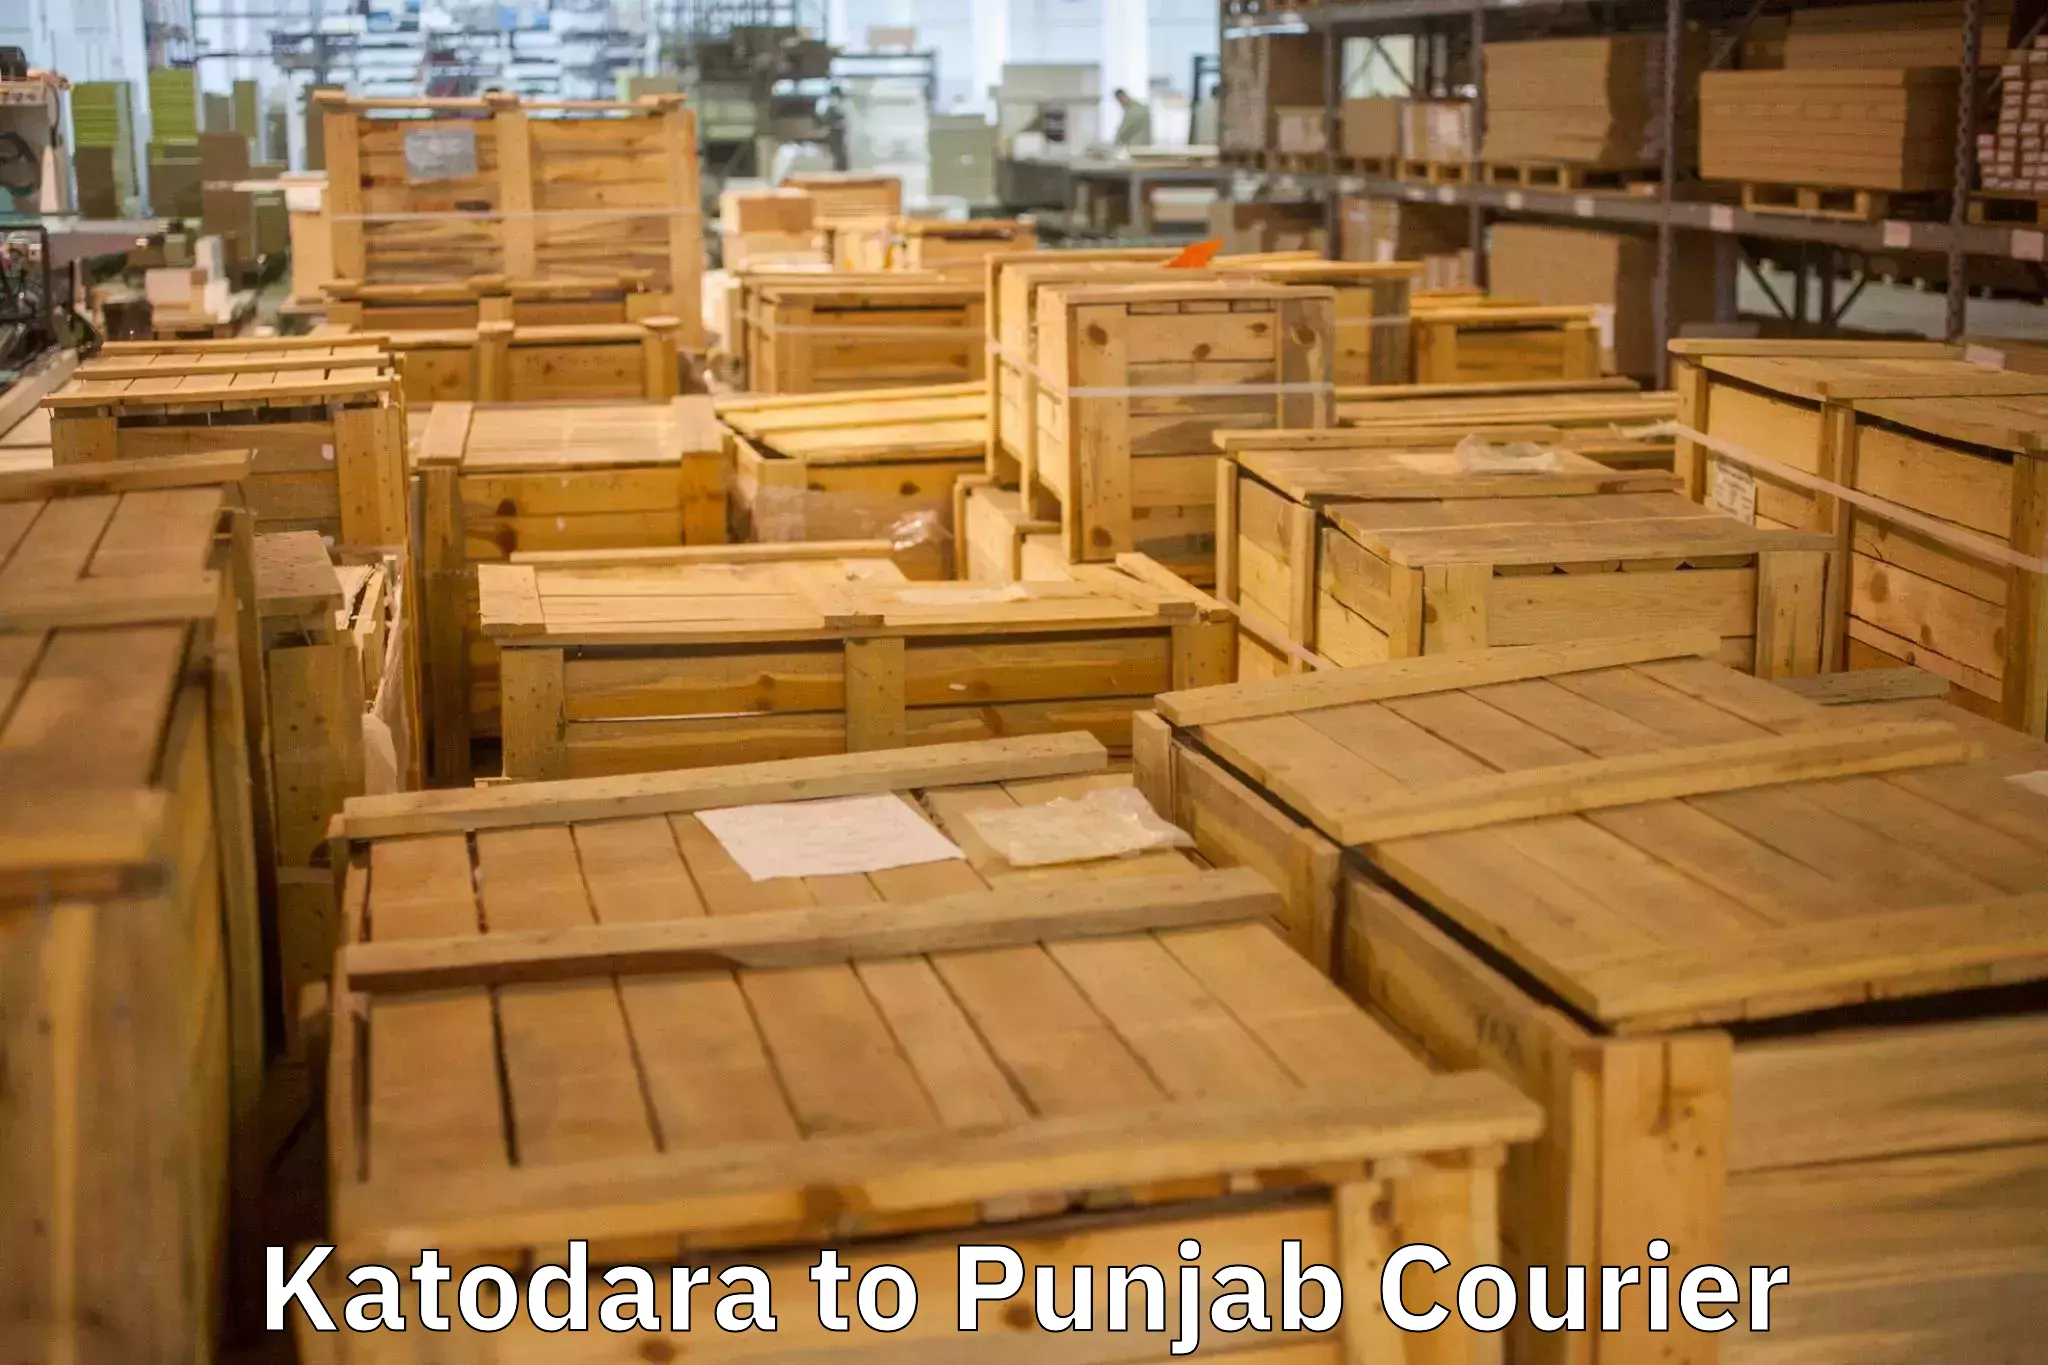 Furniture moving experts in Katodara to Ajnala